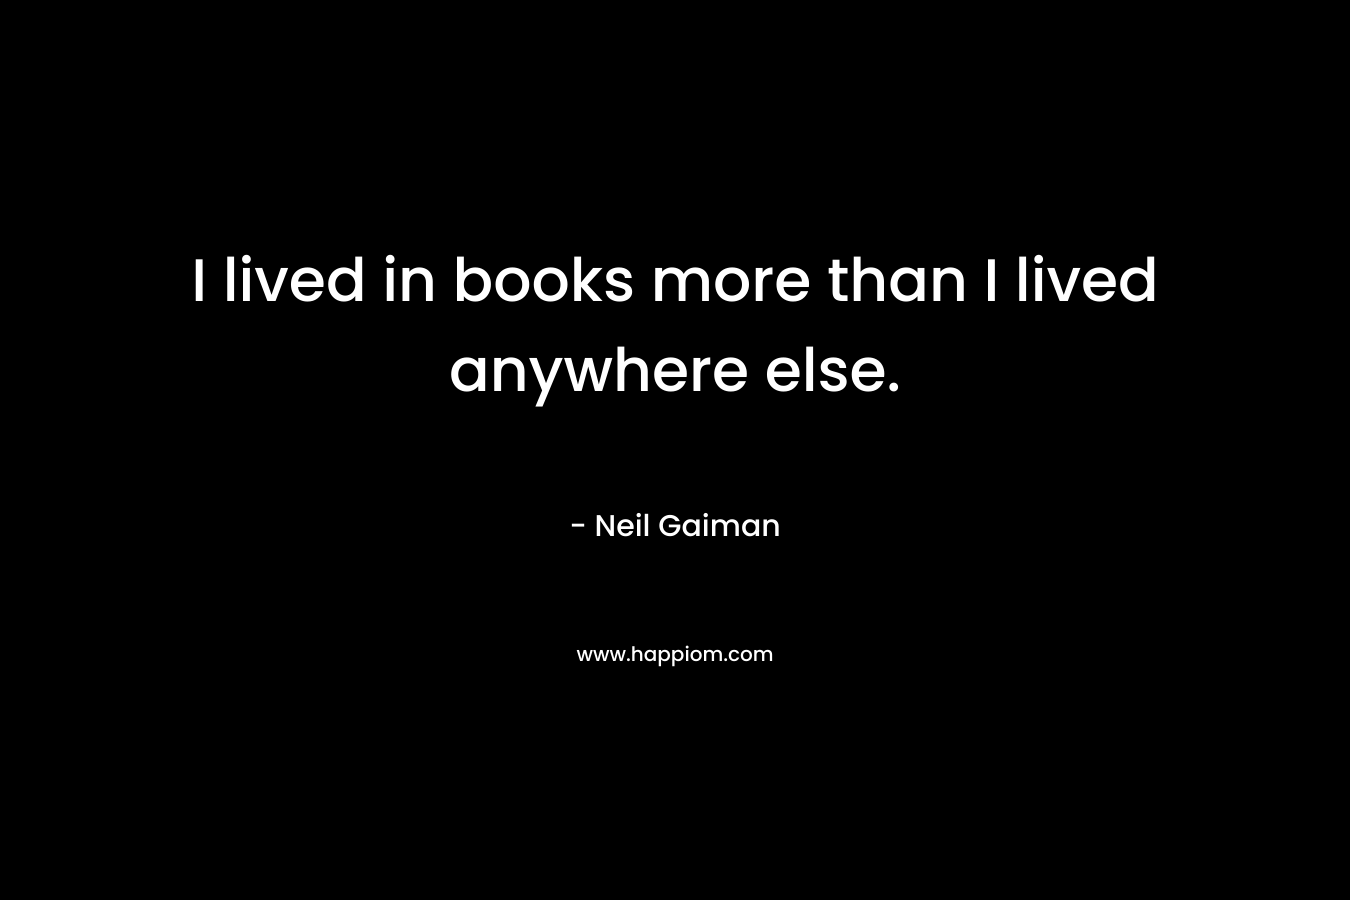 I lived in books more than I lived anywhere else.